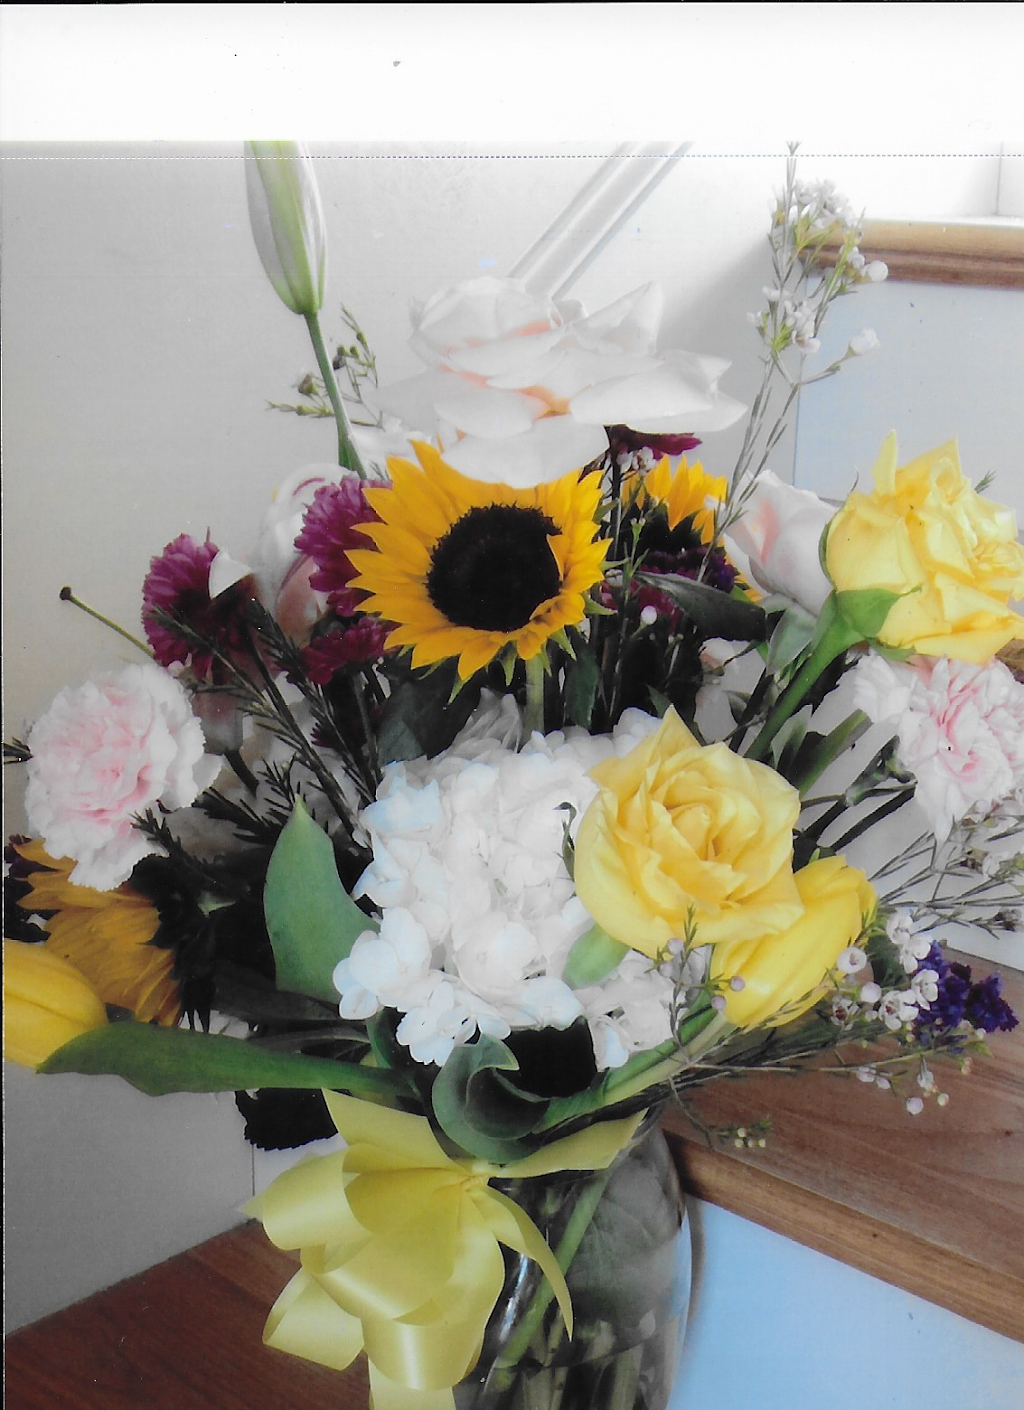 Exquisite Flowers Etc | 70 Bridge St, Pelham, NH 03076 | Phone: (603) 635-8844